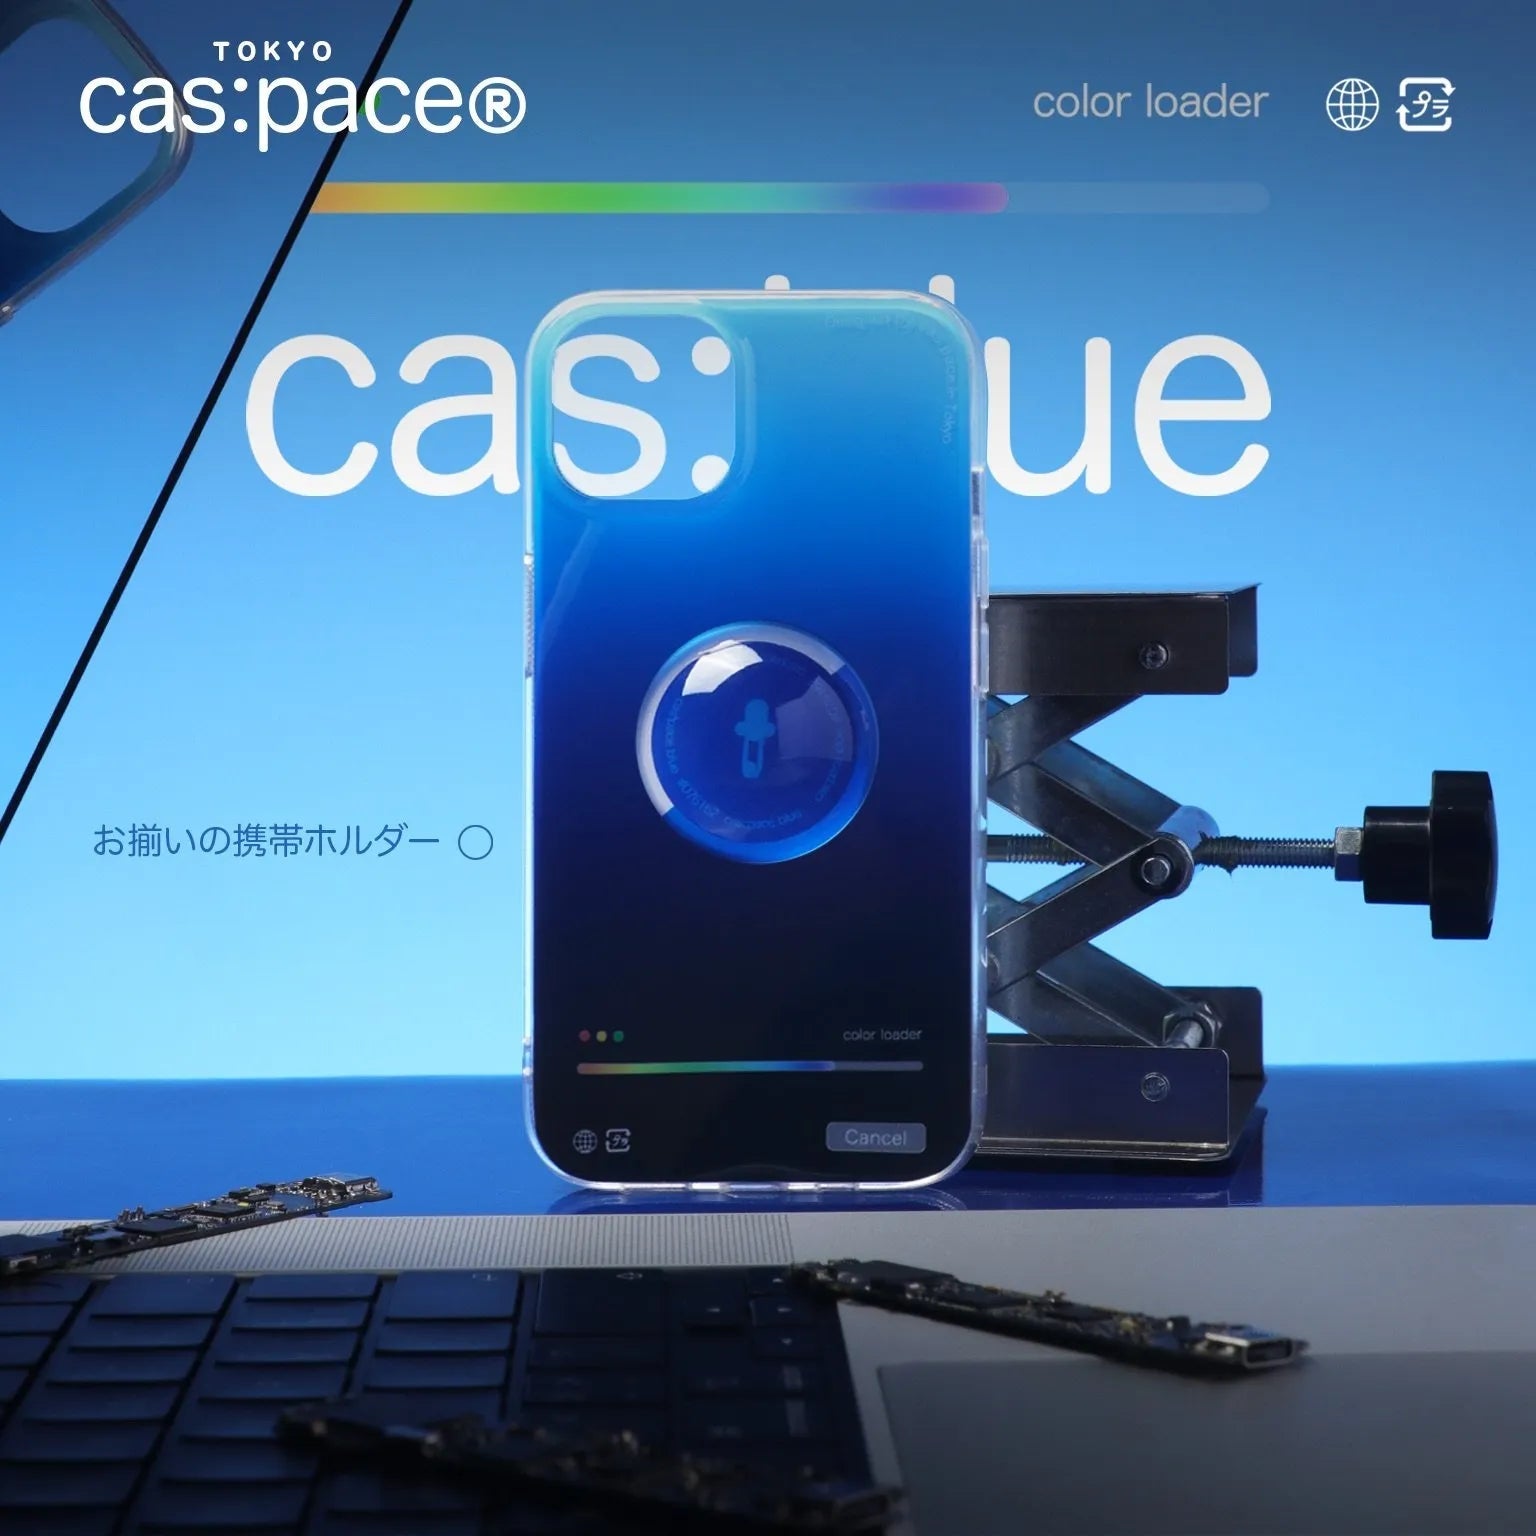 cas:pace 22S/S 「cas:pace blueカラーサンプラー」携帯ケース - cas:pace 殼空間